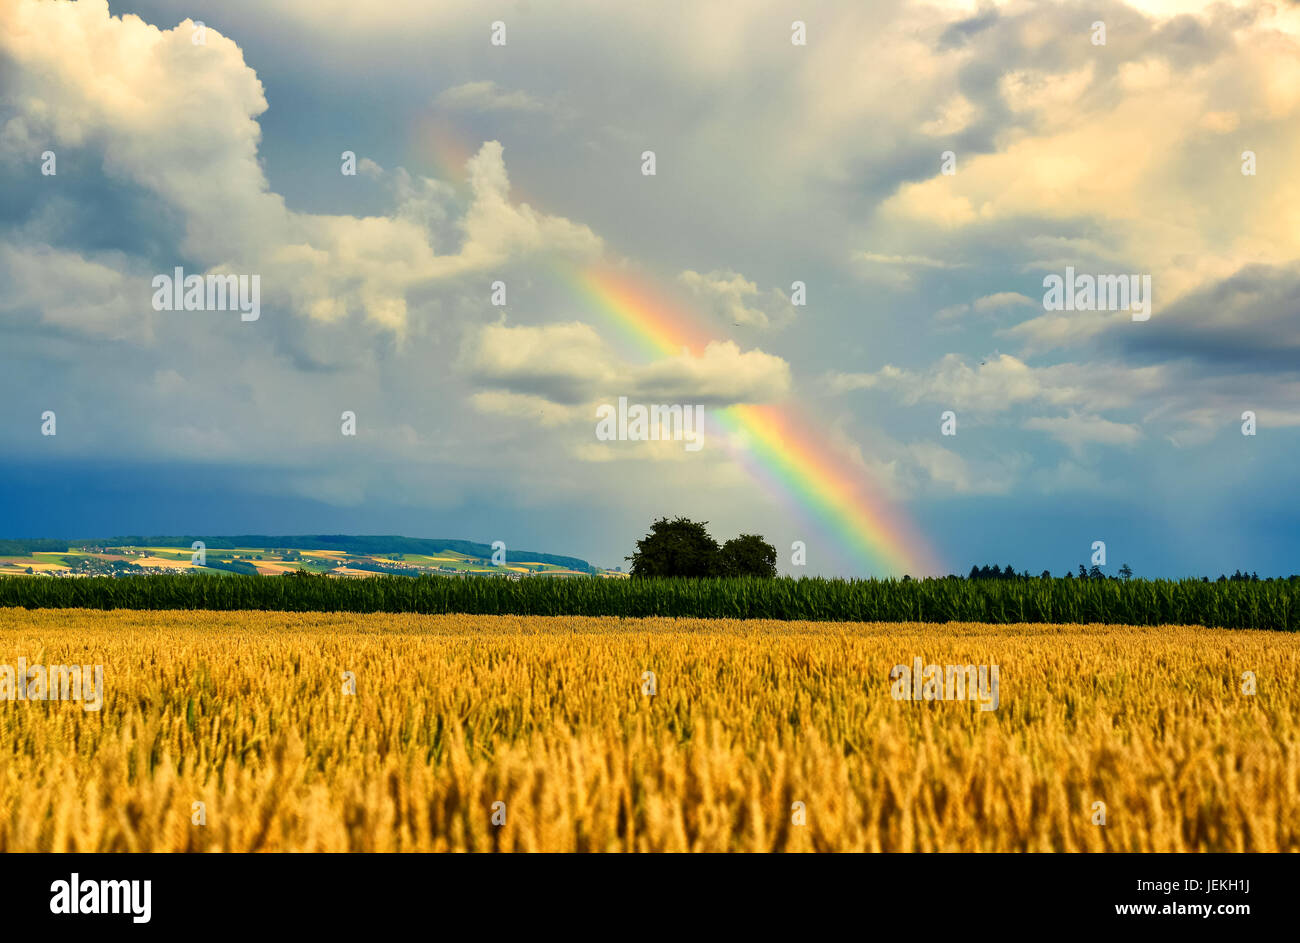 Rainbow over wheat field, Birr, Aargau, Switzerland Stock Photo